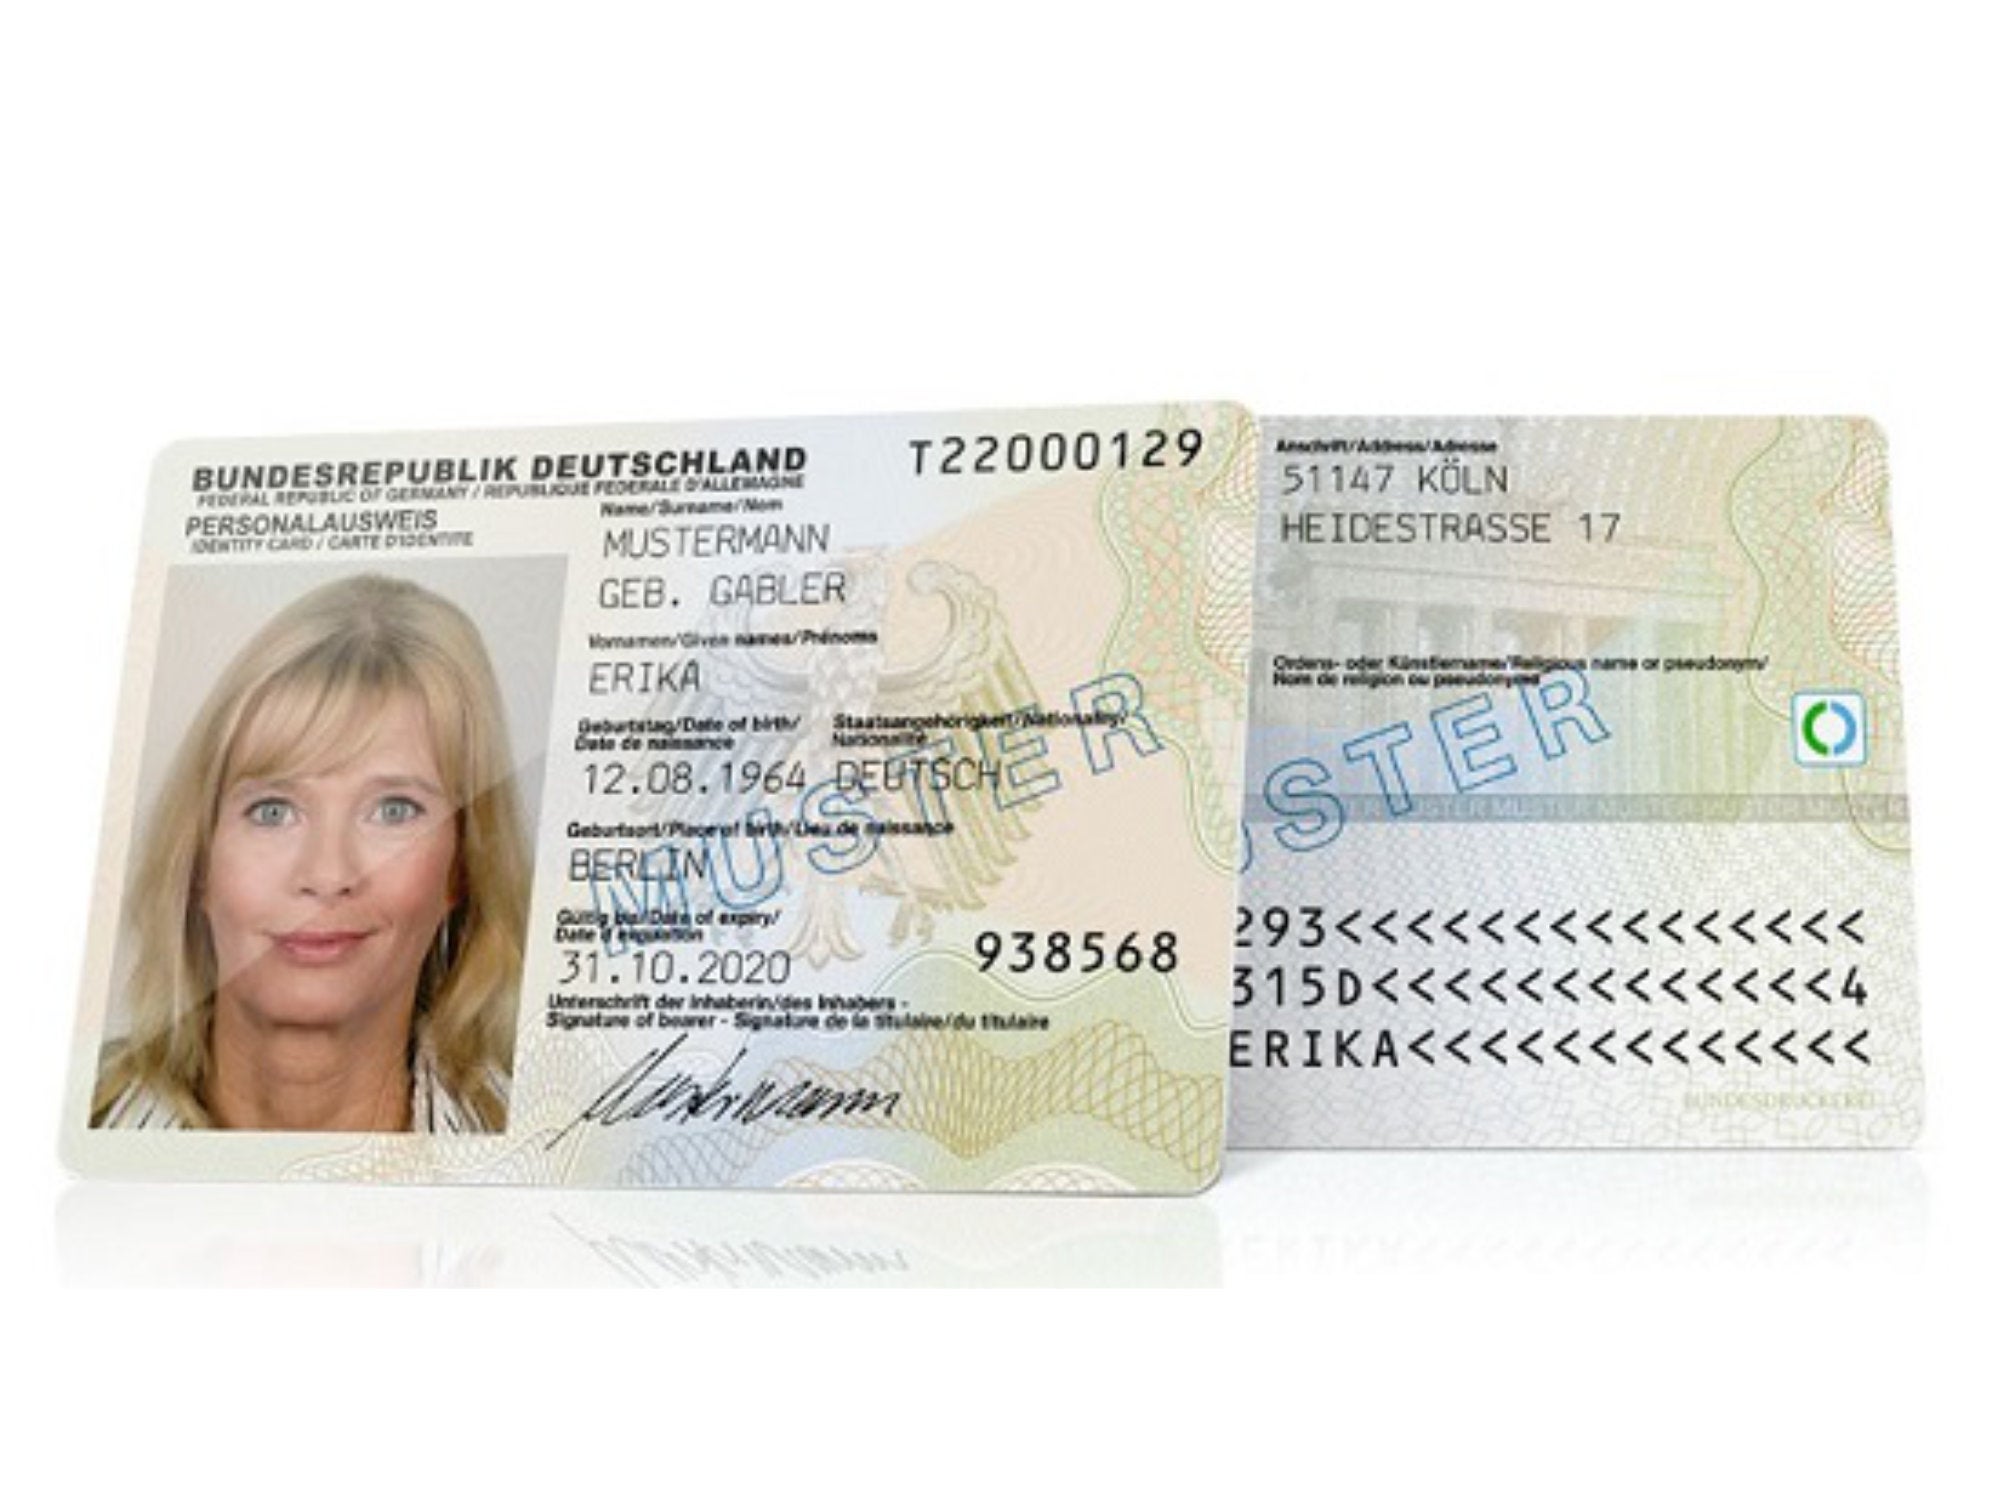 #Kennst du deine Ausweis-PIN? Wenn nicht, solltest du schnell handeln